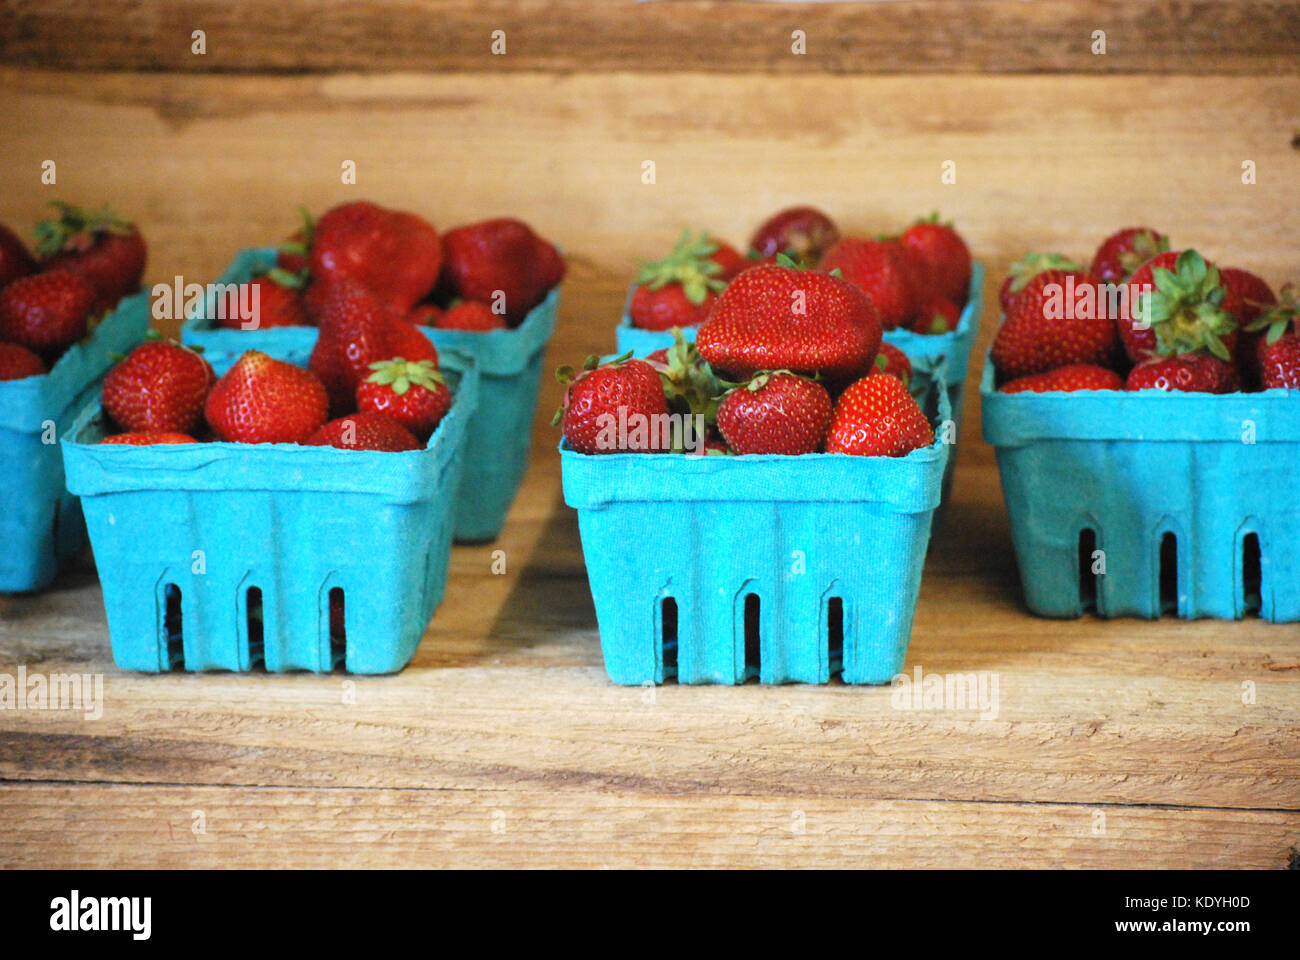 Paniers de fraises cueillies fraîches Banque D'Images